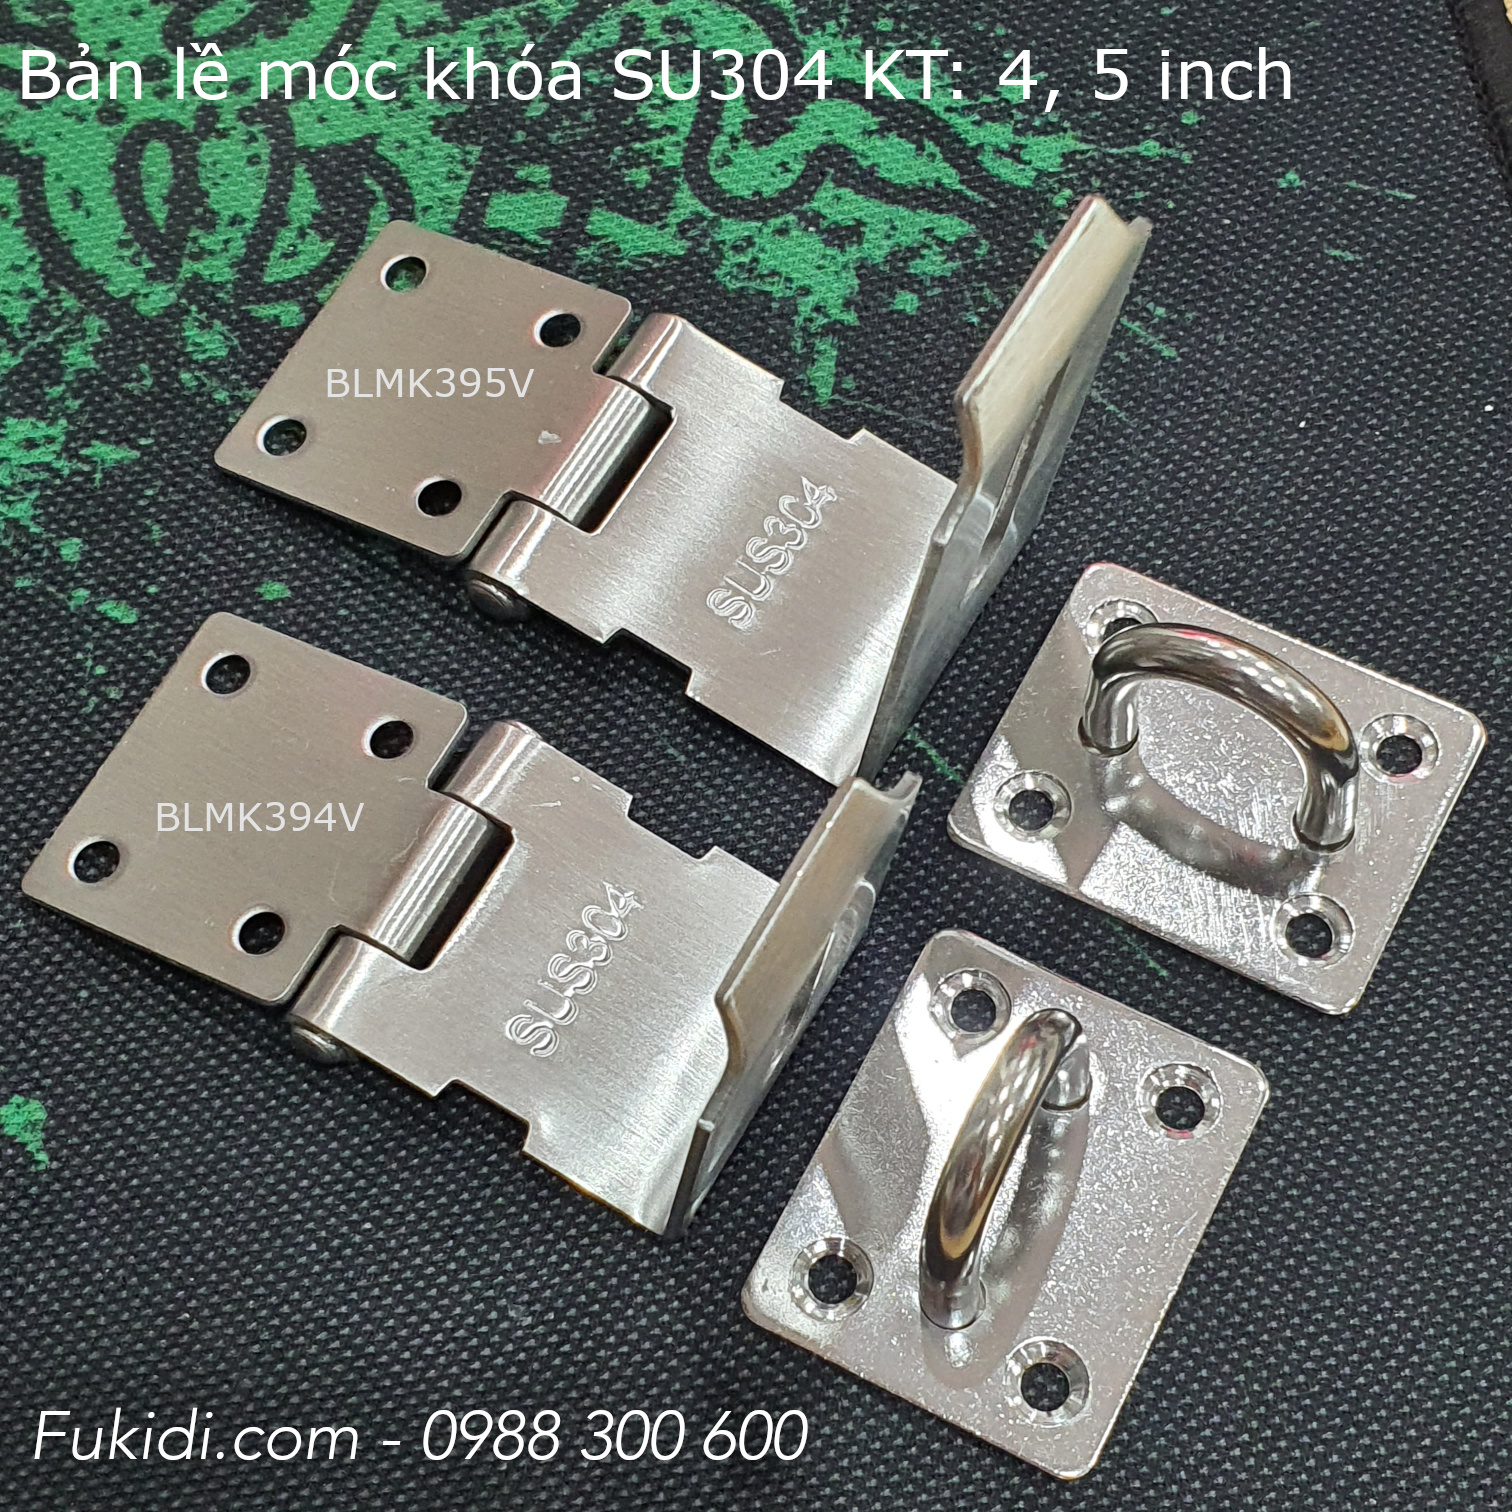 Bản lề móc khóa góc vuông inox 304, 4 inch, dày 2mm - BLMK394V